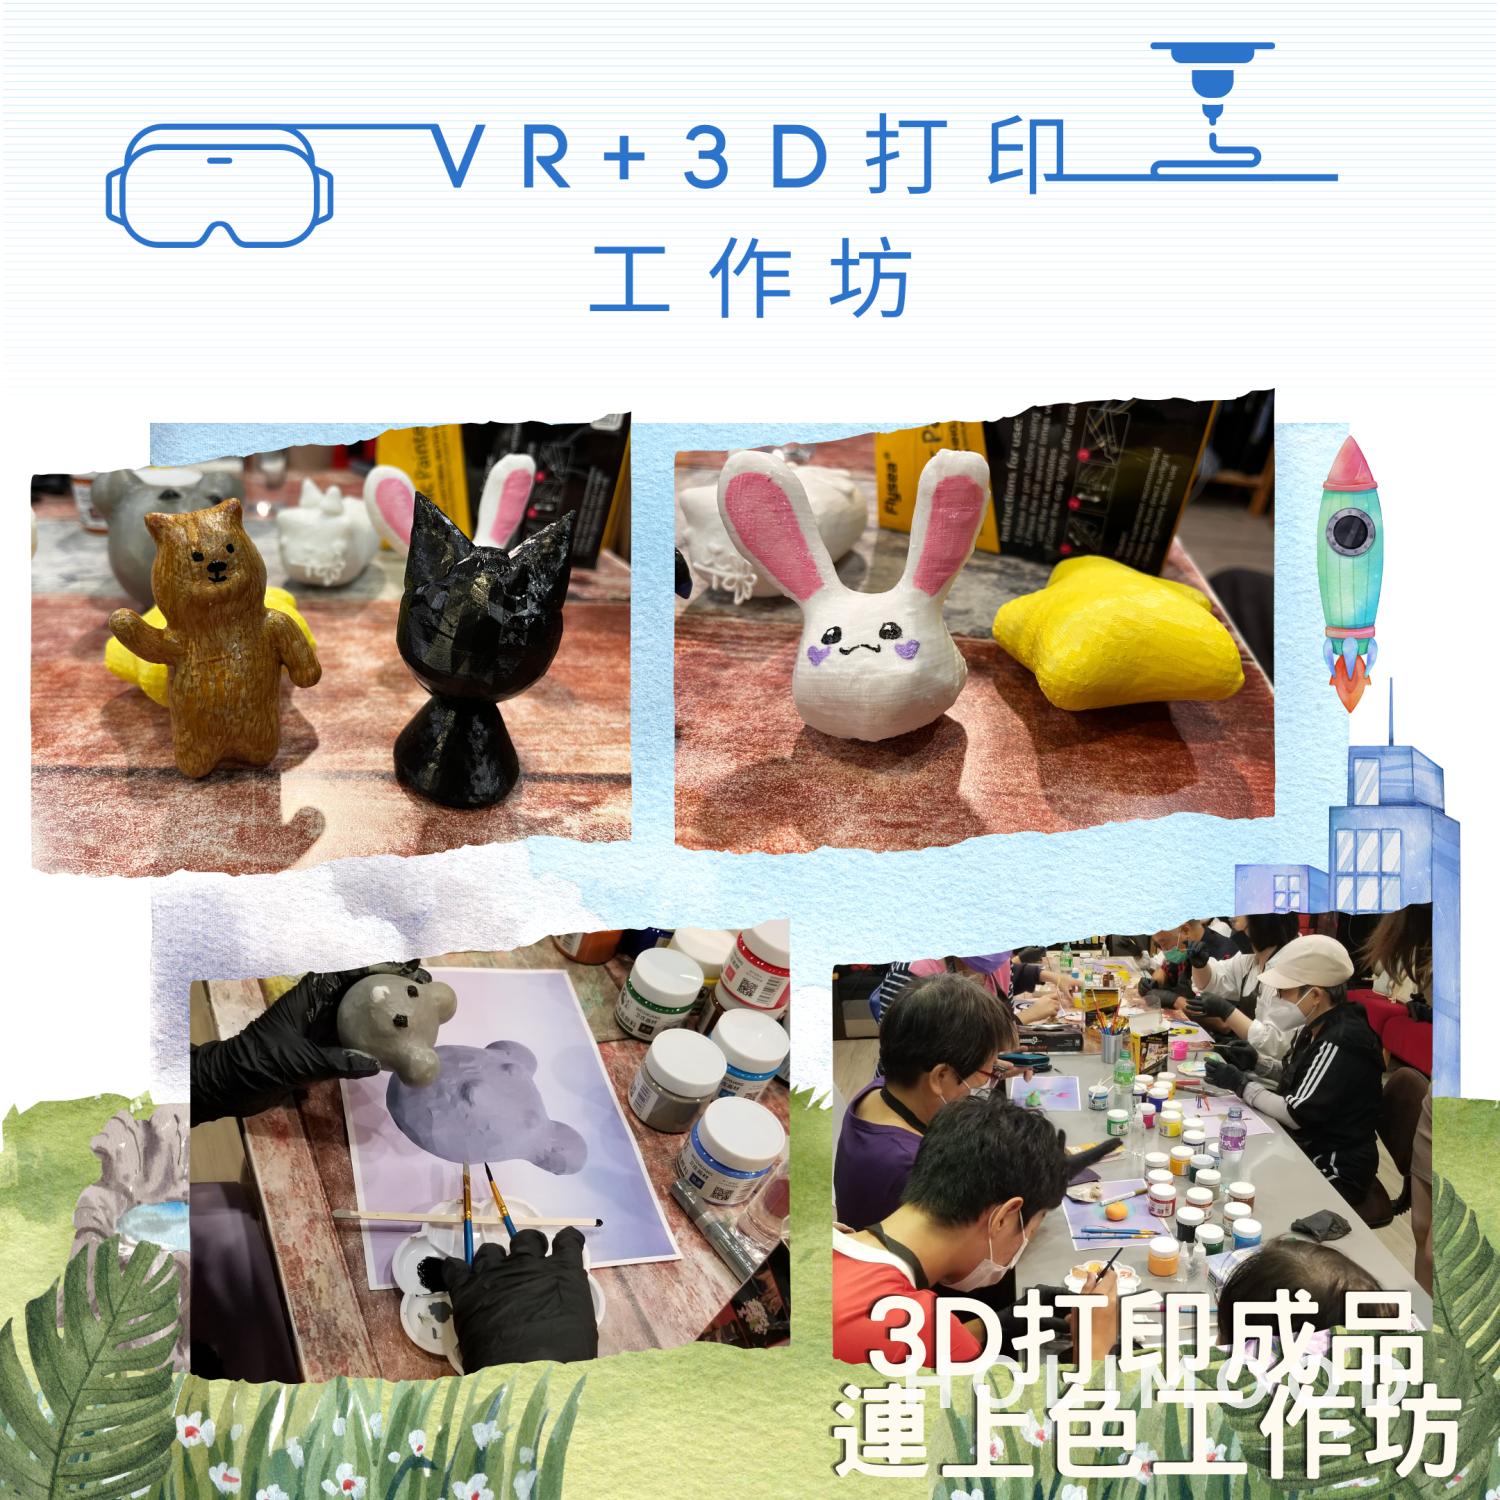 V-Owl Station VR Party 虛擬實境體驗站 VR+3D打印工作坊 1